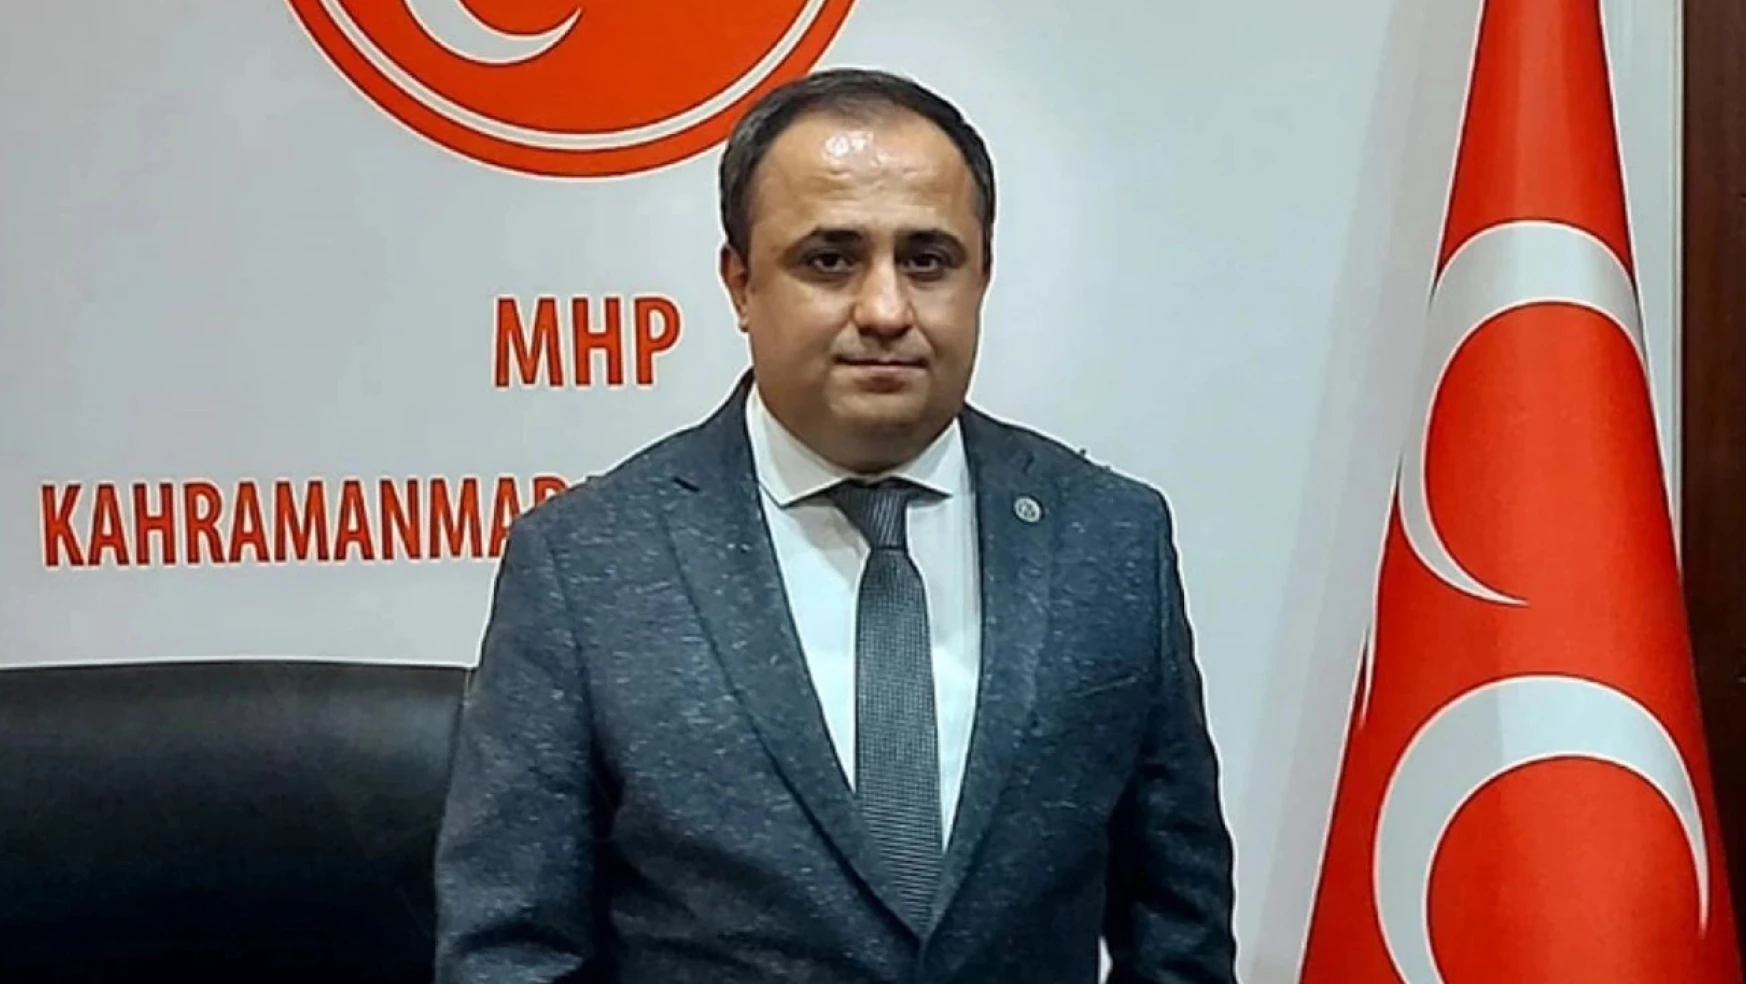 MHP İl Başkanı Demiröz'den YRP Adayı Aydoğar'a sert sözler